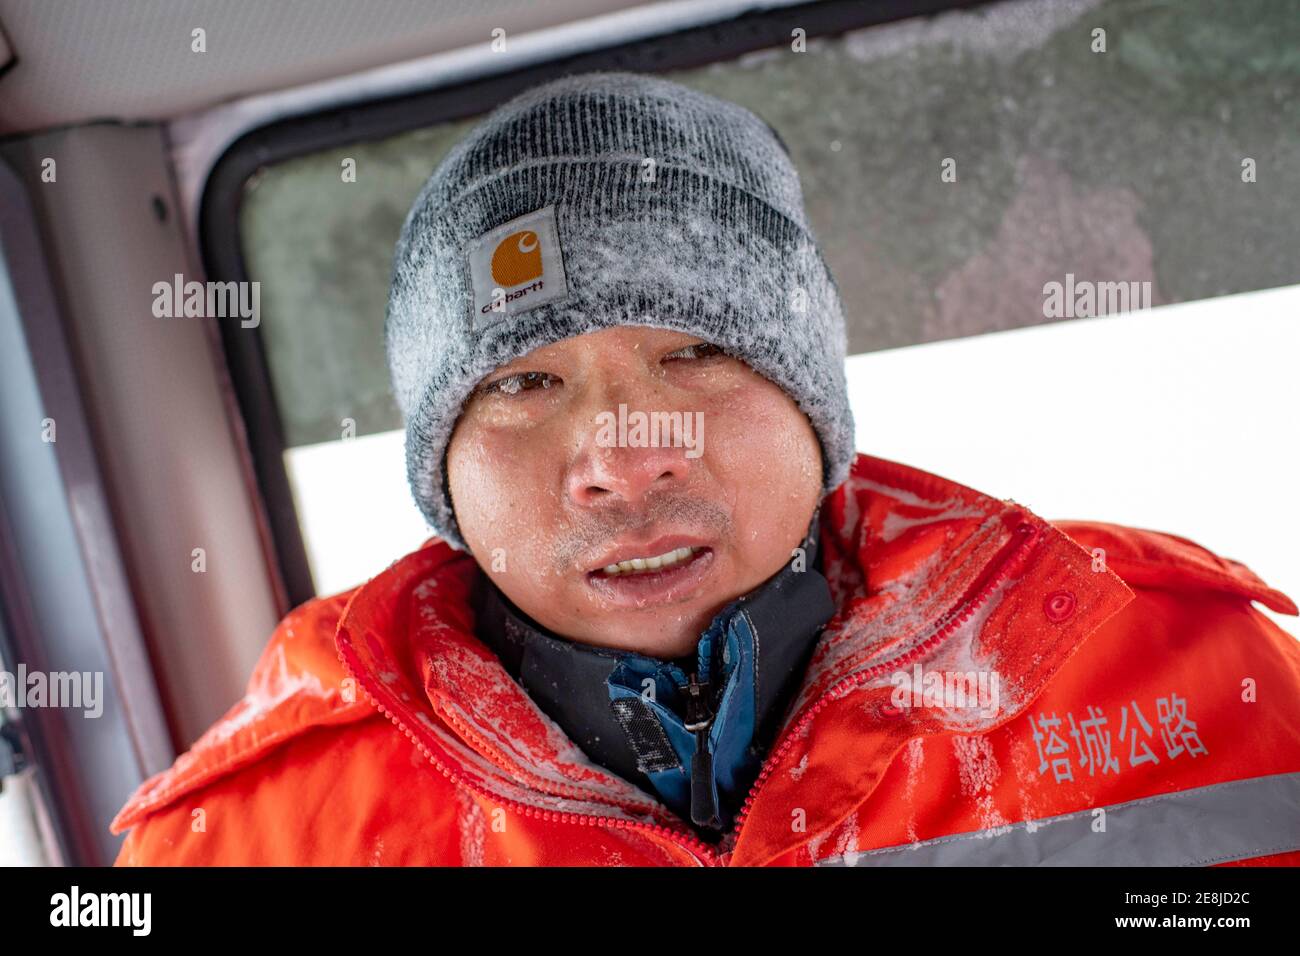 (210131) -- URUMQI, le 31 janvier 2021 (Xinhua) -- UN membre du personnel de la base de prévention et de sauvetage du vent de Maytas retourne dans le taxi du conducteur pour se réchauffer après avoir recherché des passagers bloqués à Maytas, dans le comté d'Emin, dans la région autonome de Xinjiang, dans le nord-ouest de la Chine, le 23 janvier 2021. Maytas, situé dans le comté d'Emin, est une artère importante avec des conditions météorologiques difficiles de tempêtes de neige et de vent violent pendant environ un demi-an. Depuis 2002, la base de prévention et de sauvetage du vent de Maytas est responsable du défrichement et du sauvetage du S201 dans la région. Pour les personnes qui sont en service ici, wor Banque D'Images